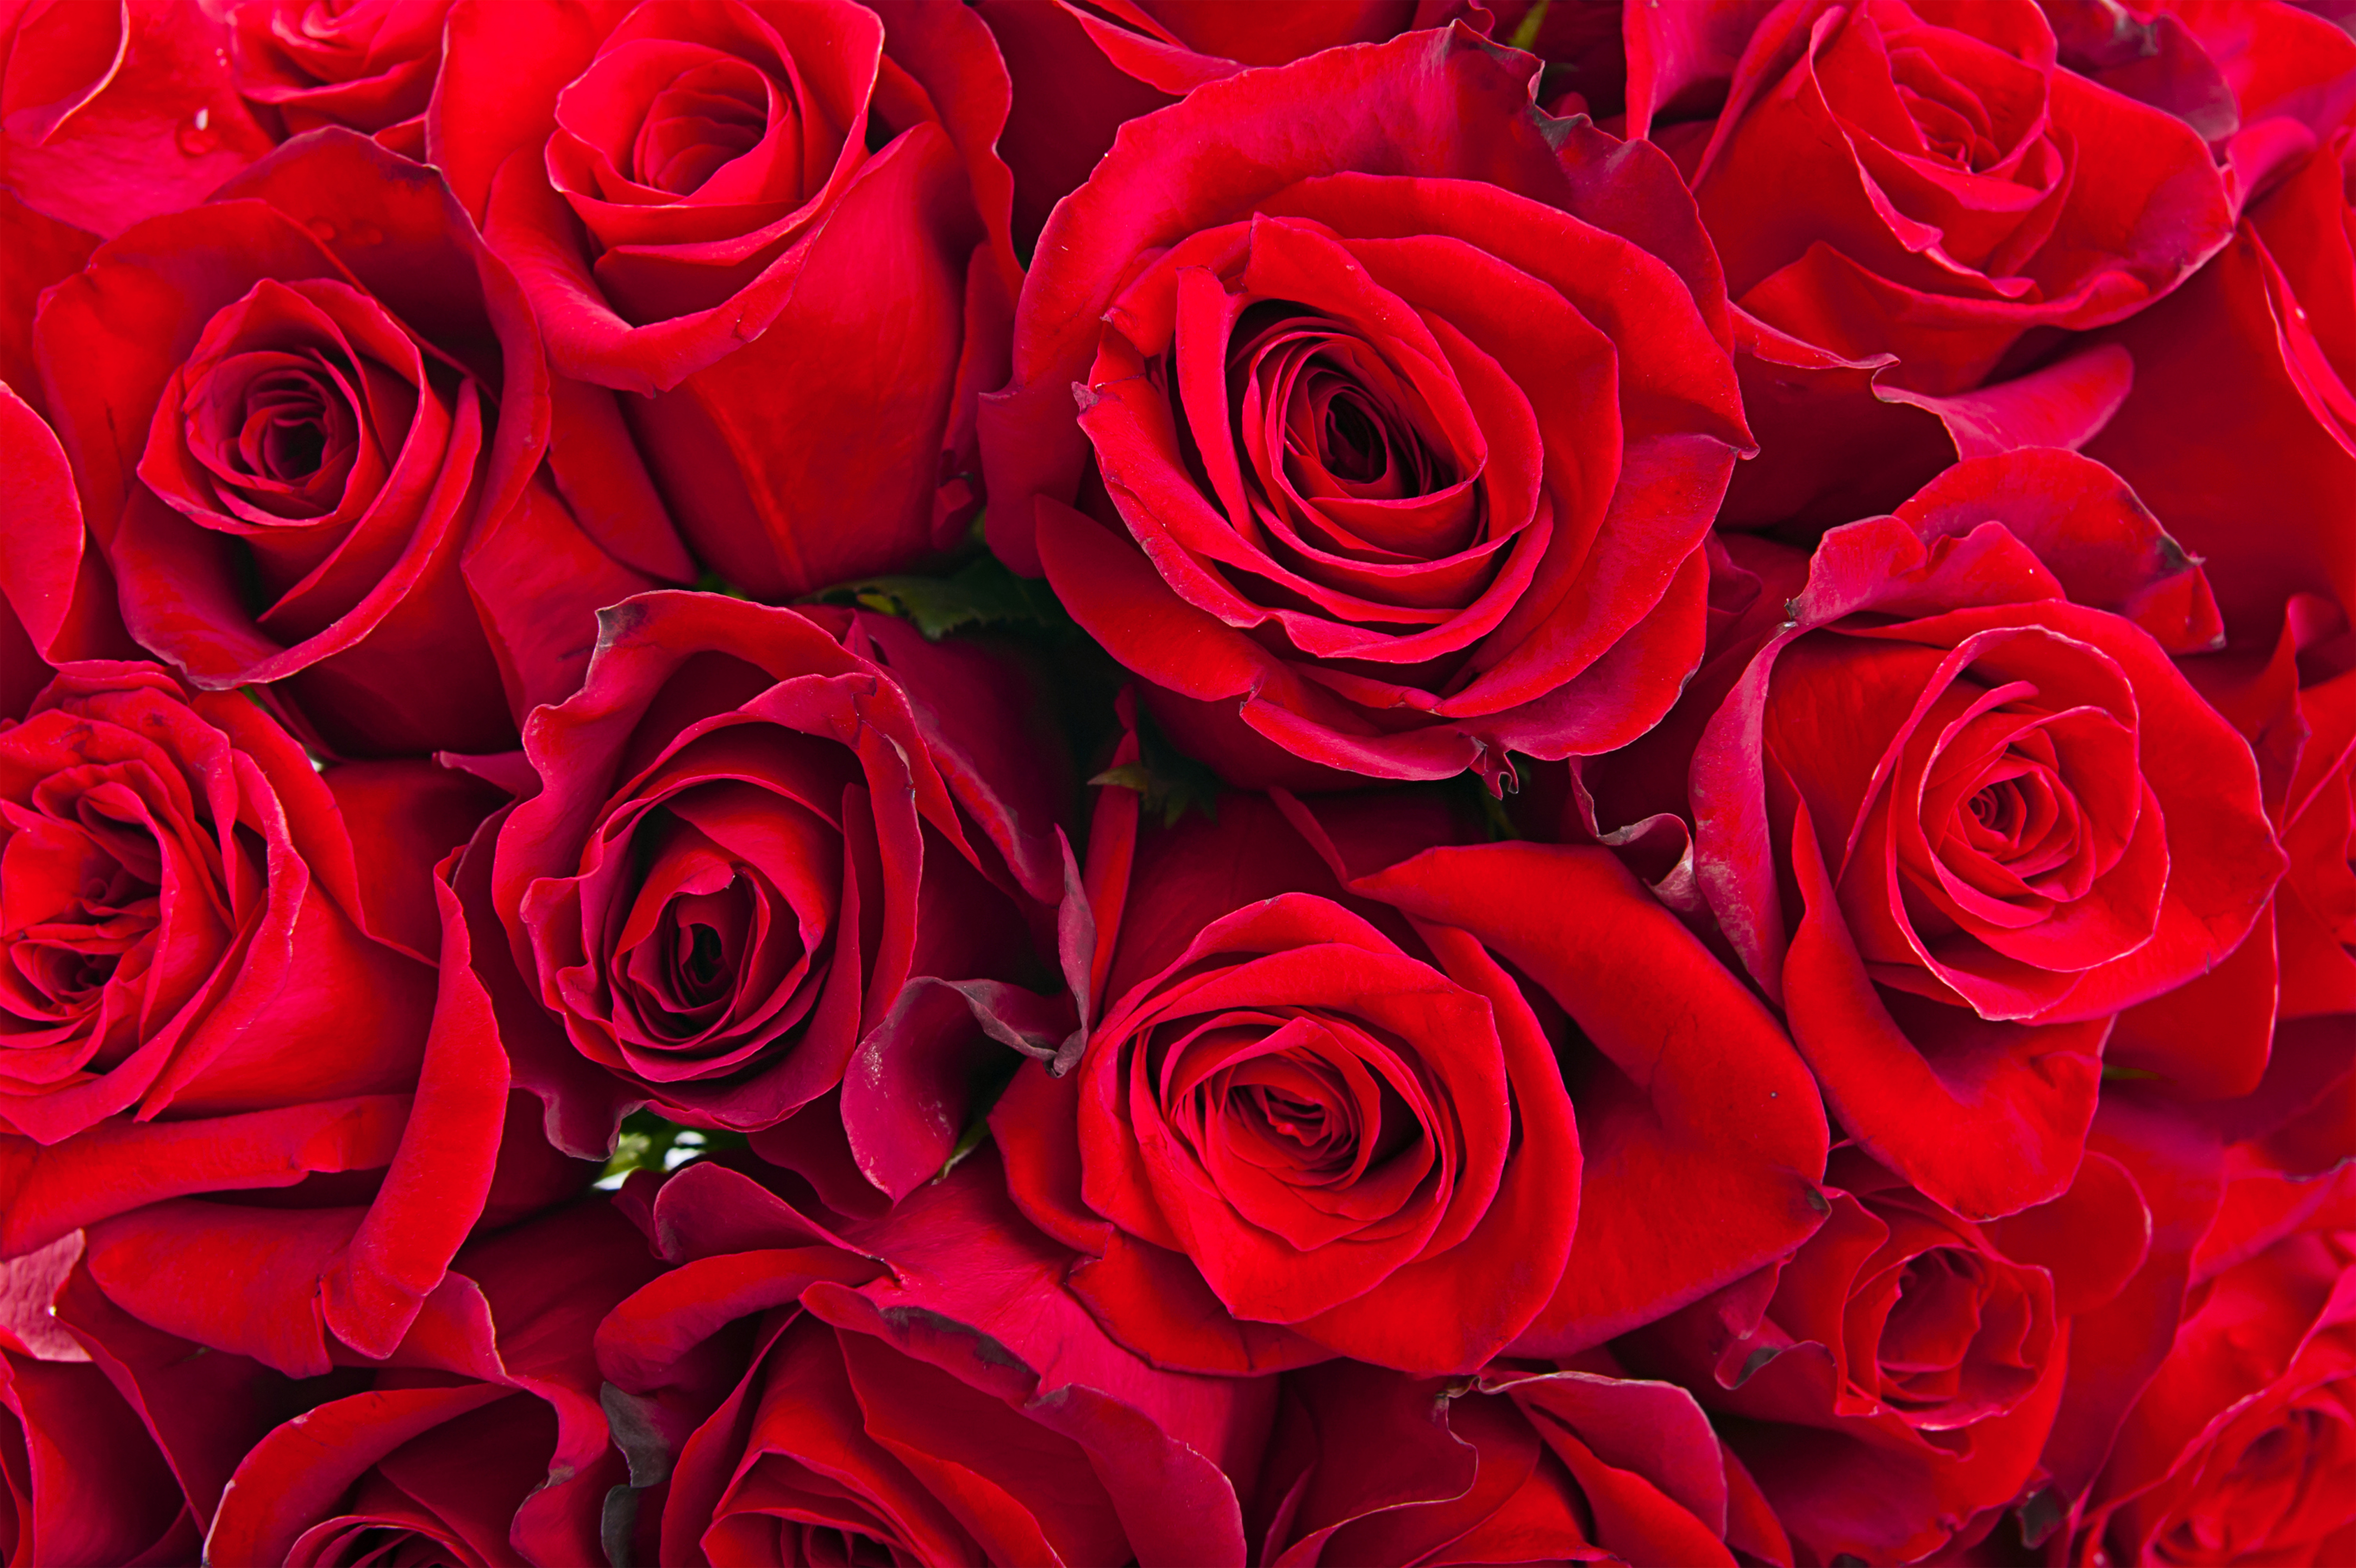 Hầu hết mọi người đều yêu thích hoa hồng, và đây là sự tuyệt vời cho phép bạn khám phá những hình nền hoa hồng đẹp mắt và phù hợp với nhiều phong cách thiết kế khác nhau. Cùng khám phá ngay để trang trí cho tác phẩm của bạn thêm phần hoàn hảo và nổi bật hơn.